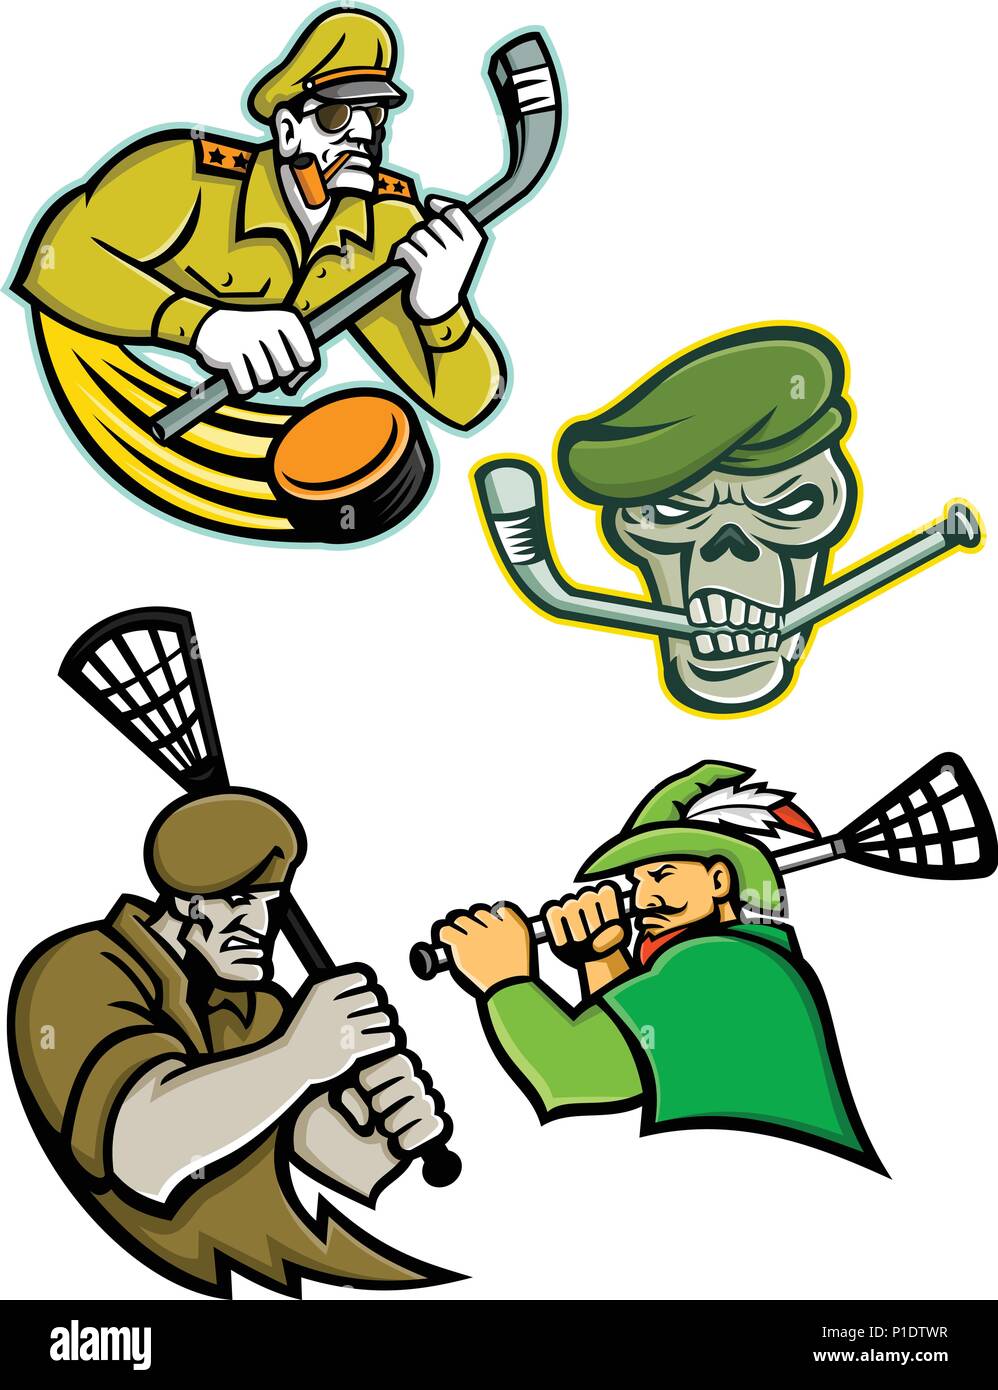 Maskottchen Symbol Abbildung von lacrosse und Eishockey Militär und Krieger Maskottchen einer Armee allgemein, Green Beret Schädel, grüne Bogenschütze und Commando Stock Vektor